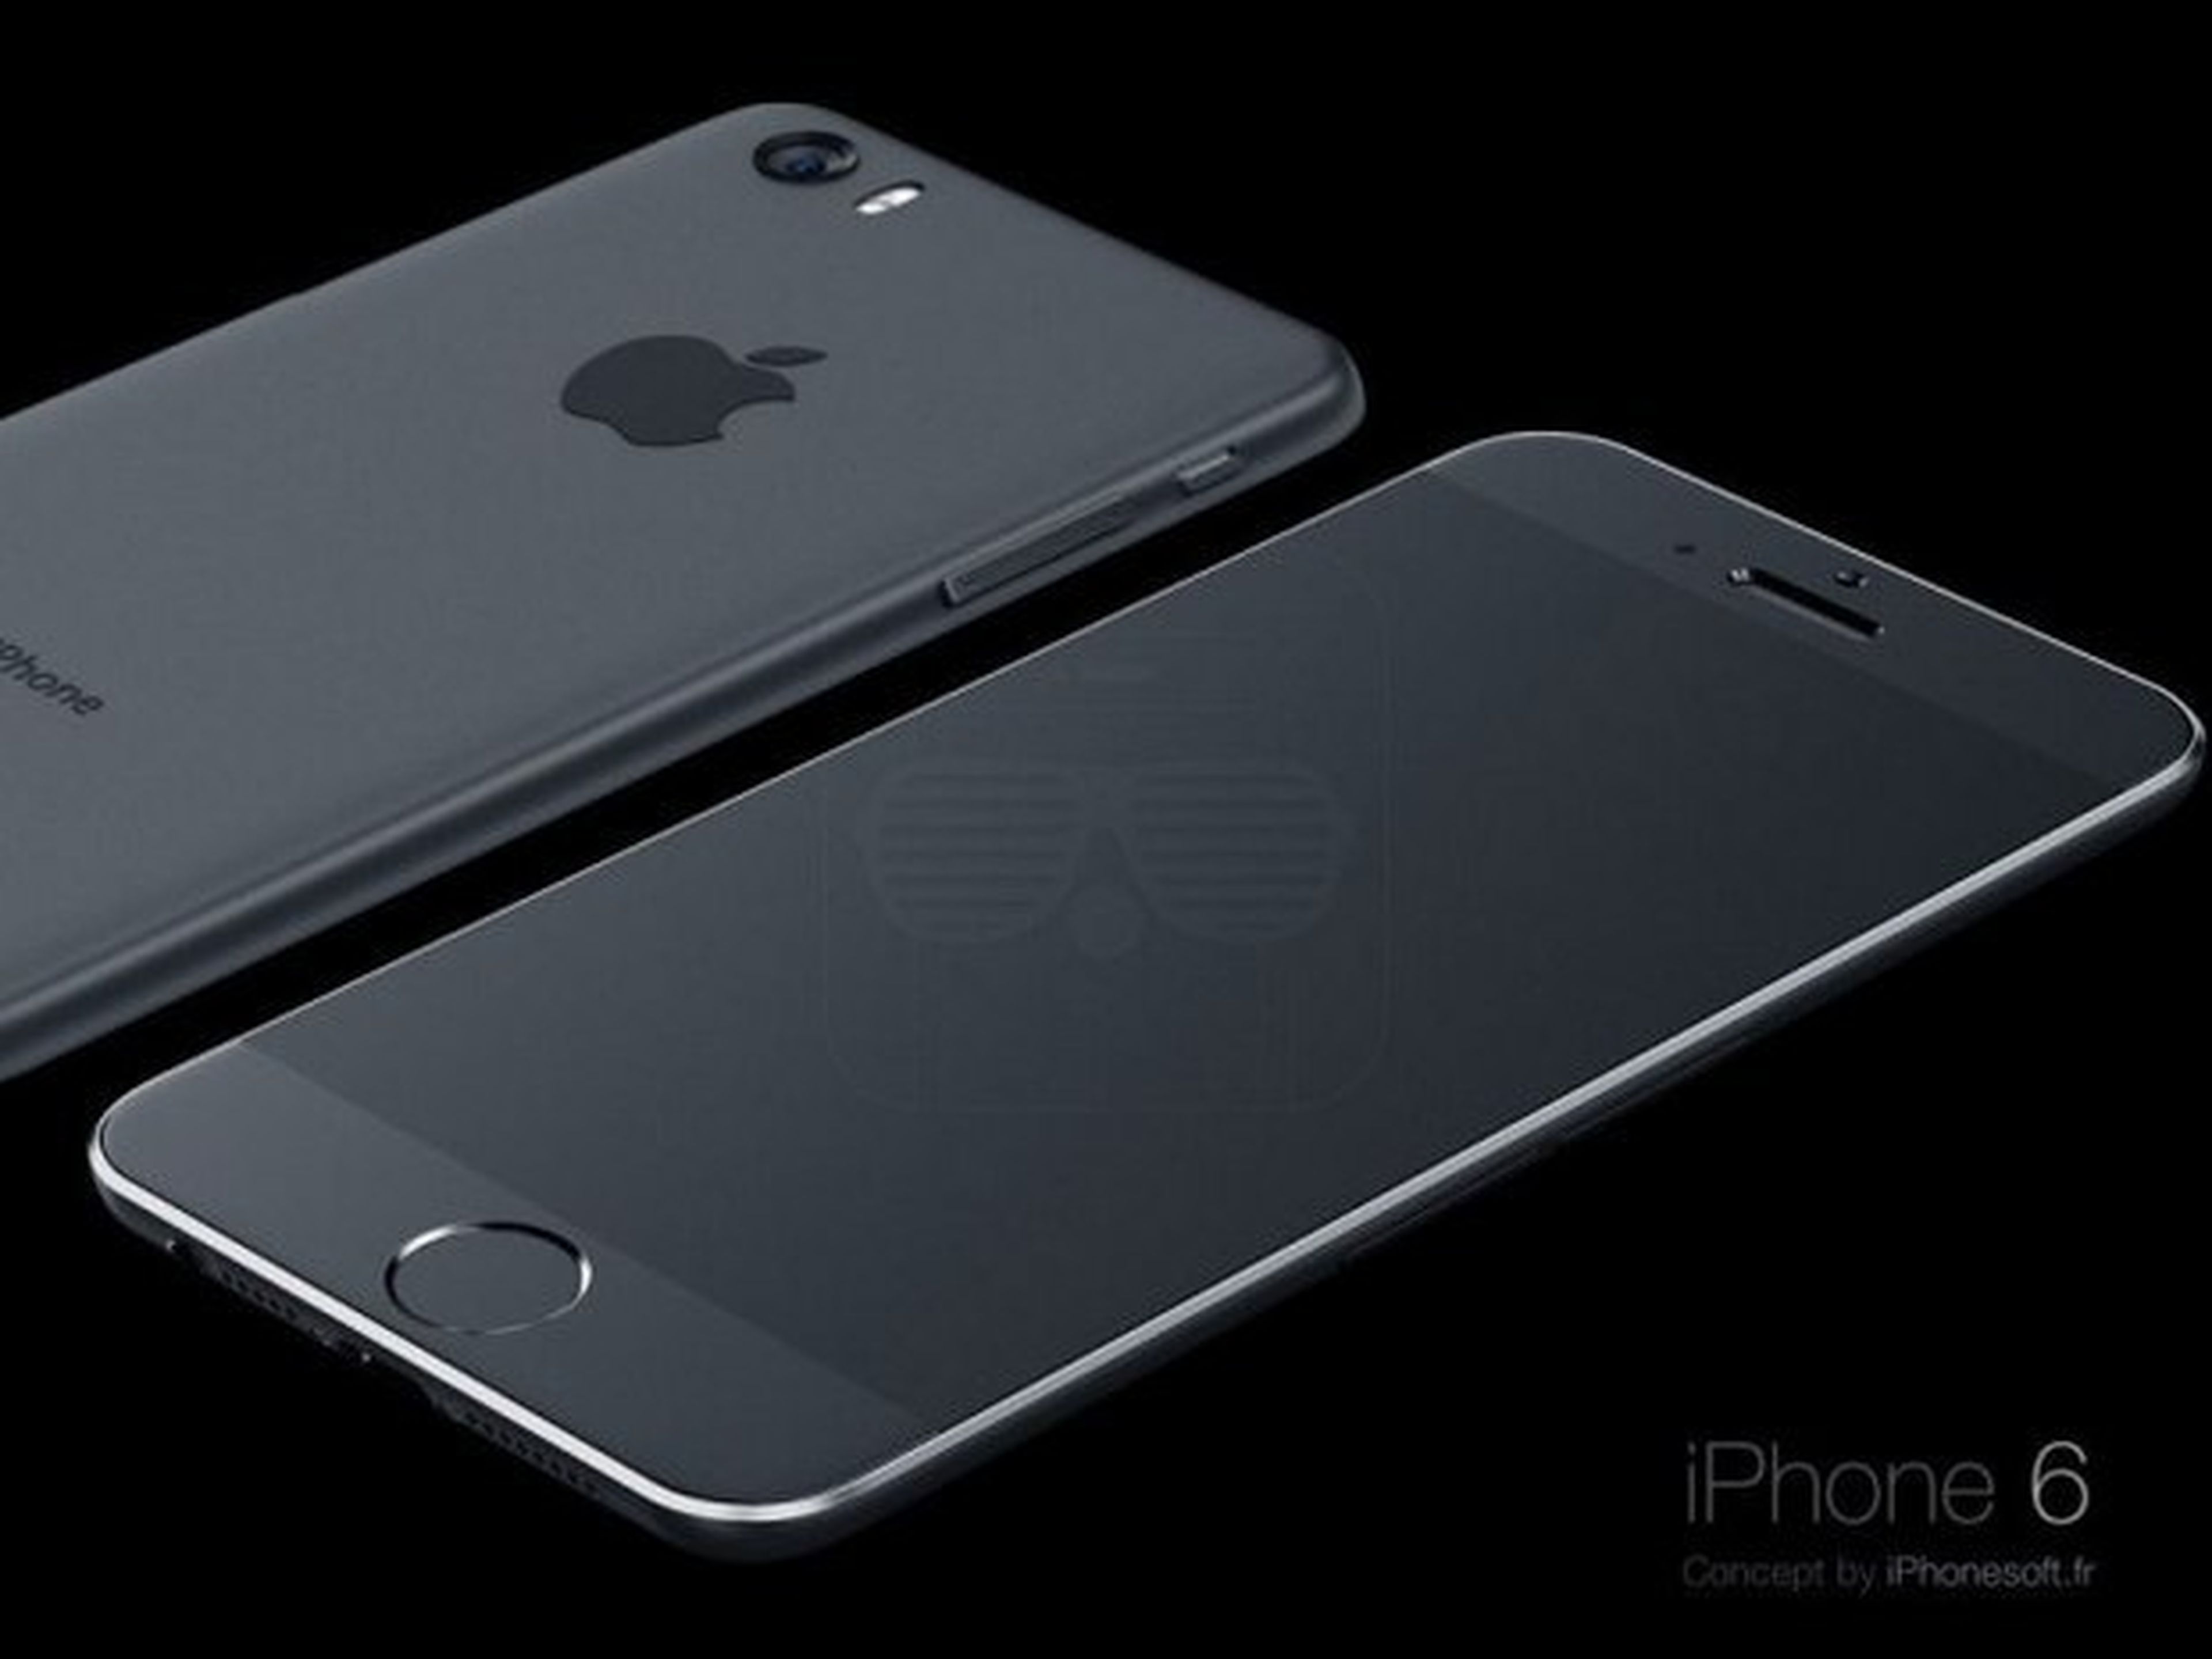 iPhone 6 especificaciones técnicas